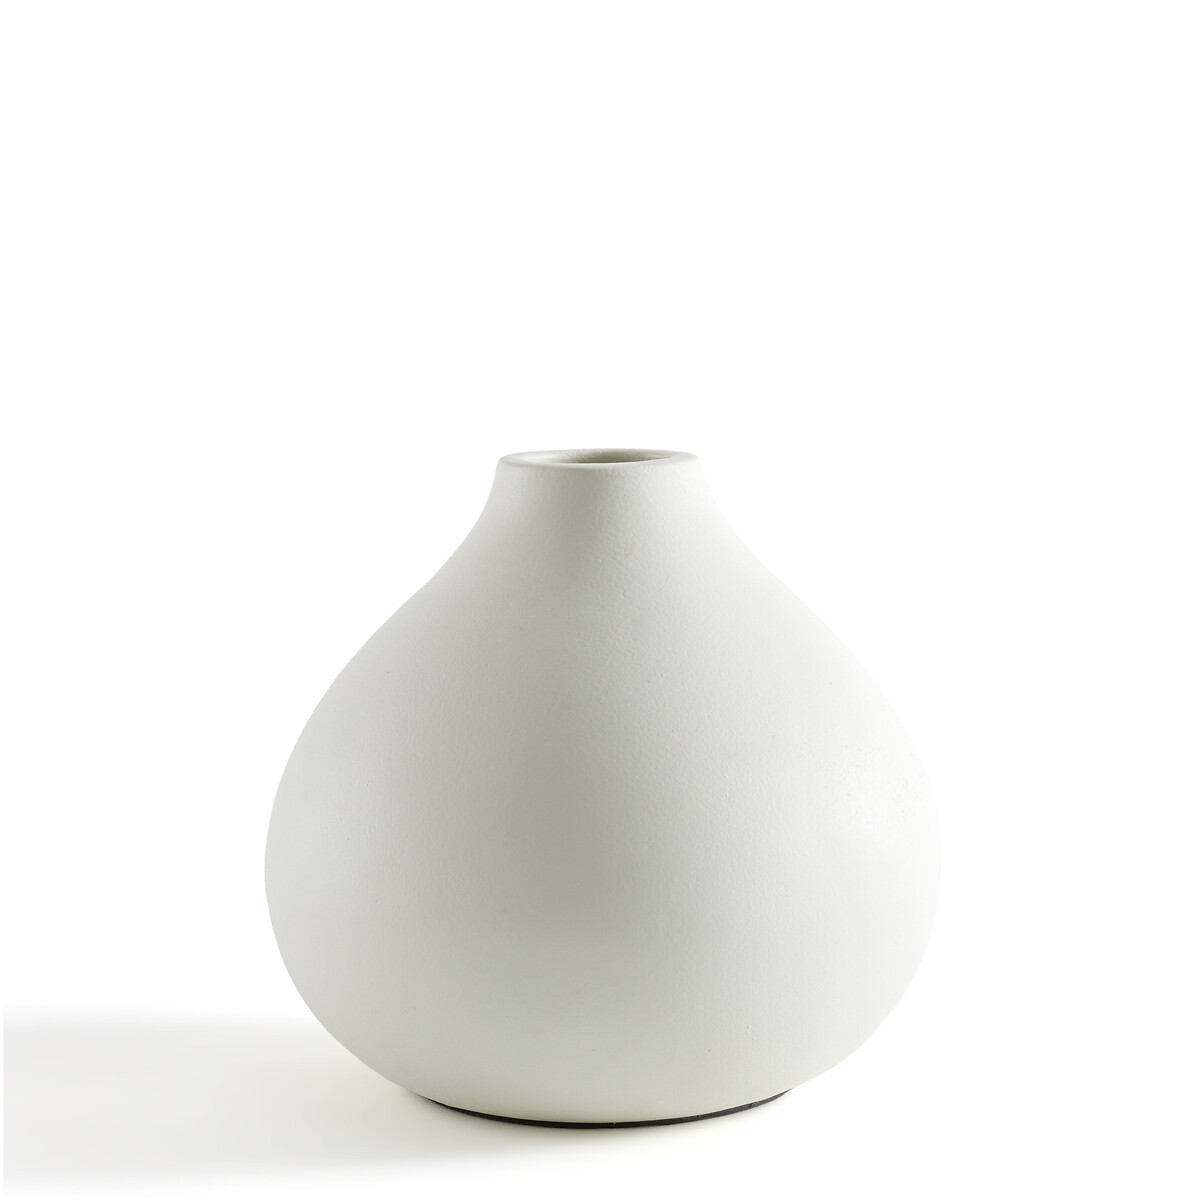 Ваза LA REDOUTE INTERIEURS В форме шара из керамики В23 см Kuza единый размер белый